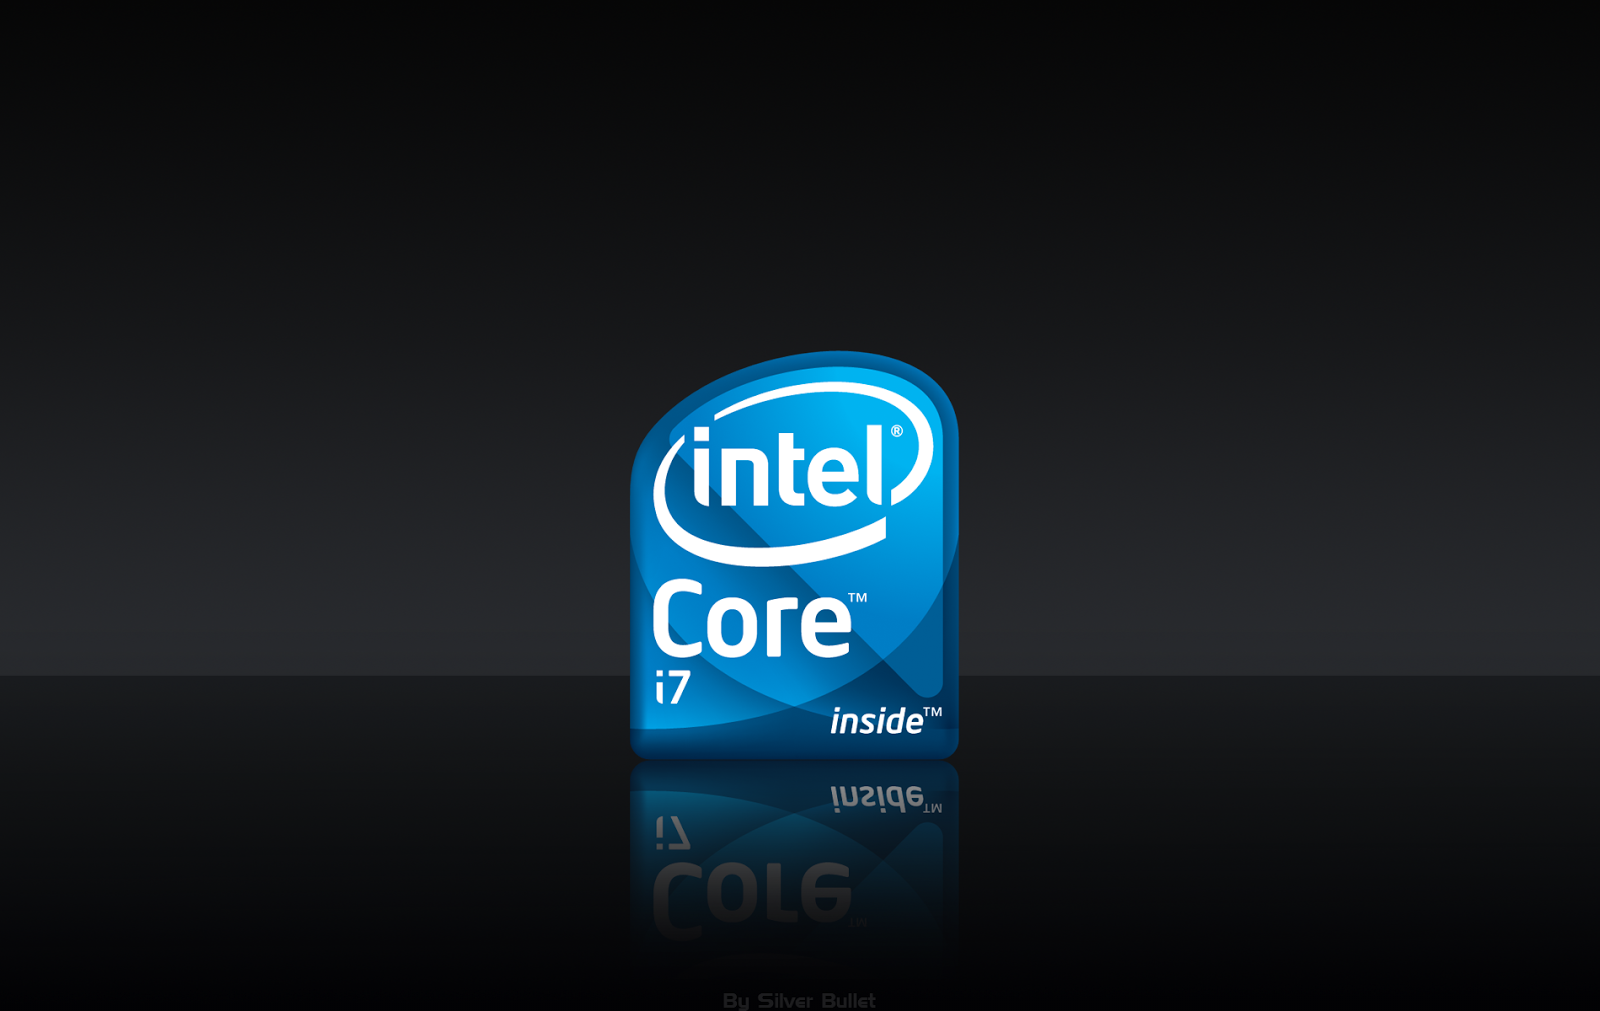 Processor Intel I7 Wallpaper | PicsWallpaper.com